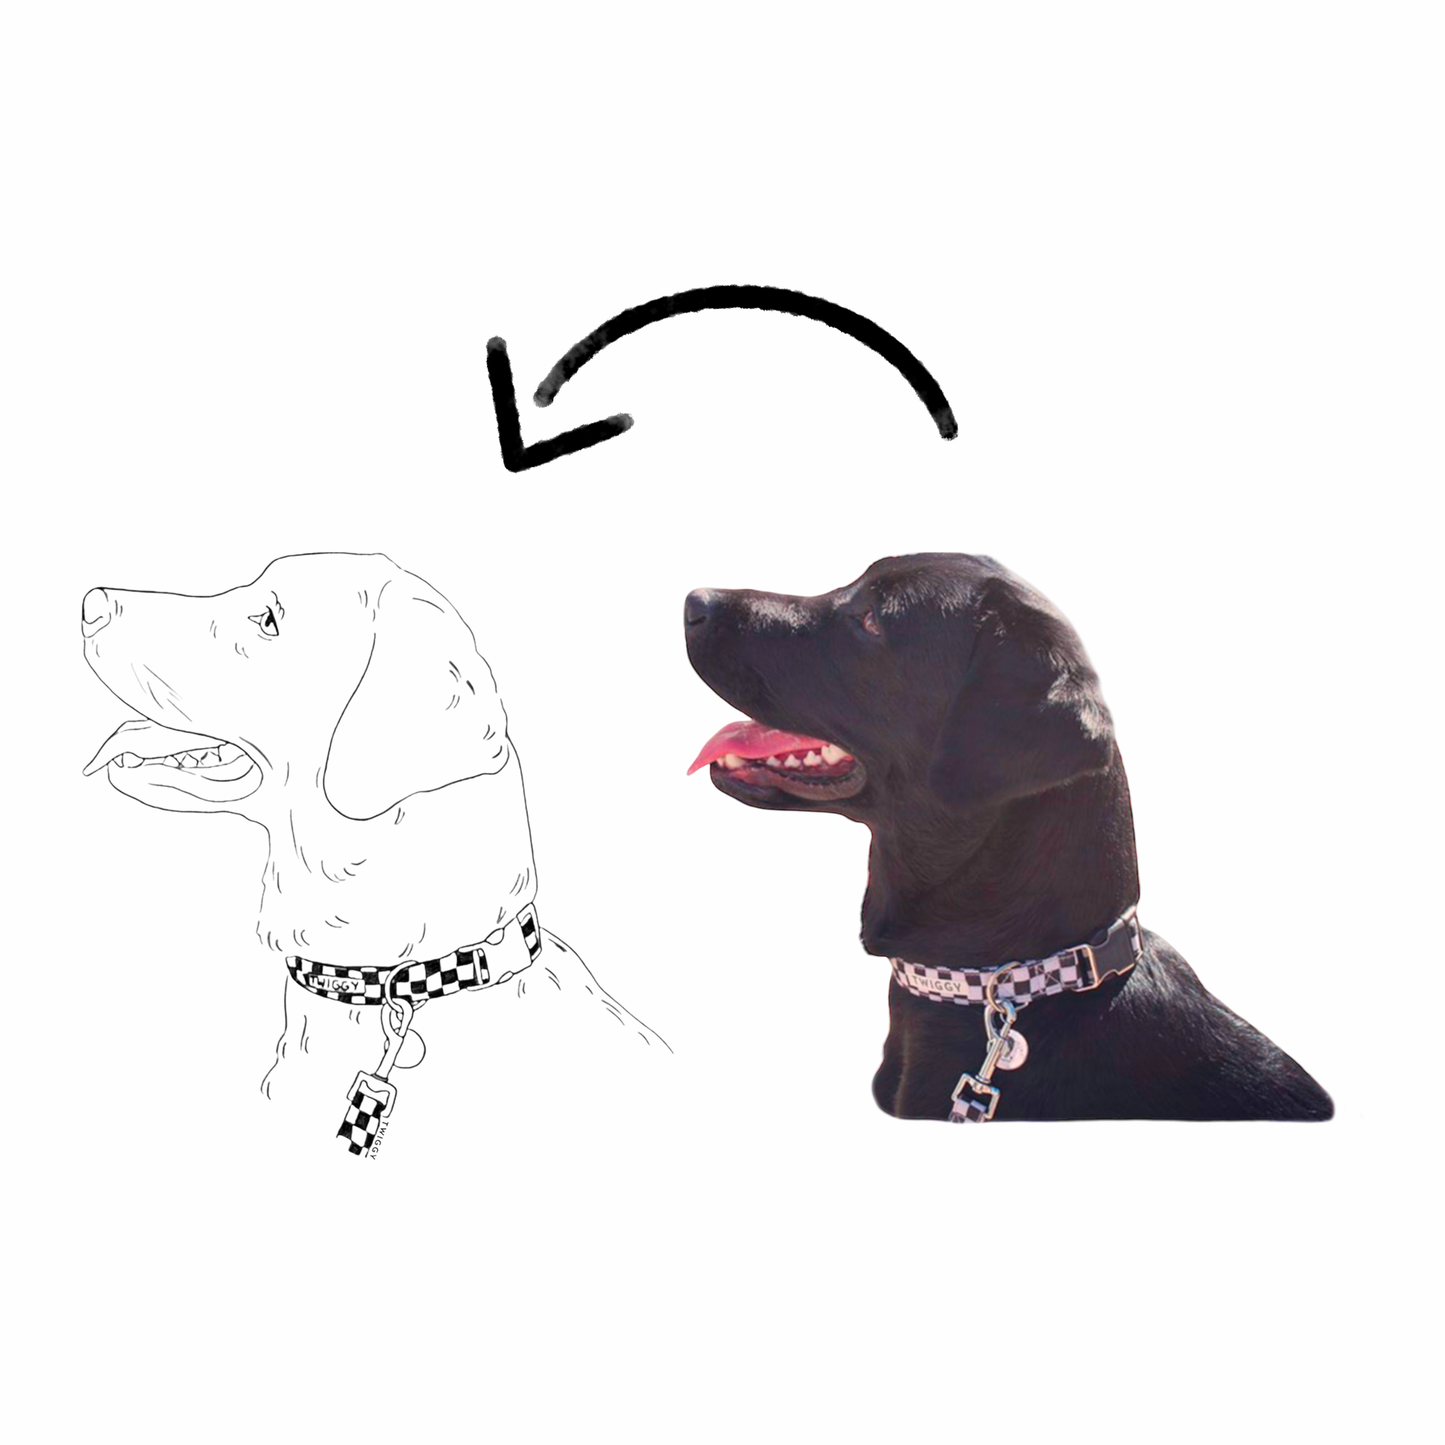 Dessin photo illustration portrait art chien labrador noir digital numérique twiggy